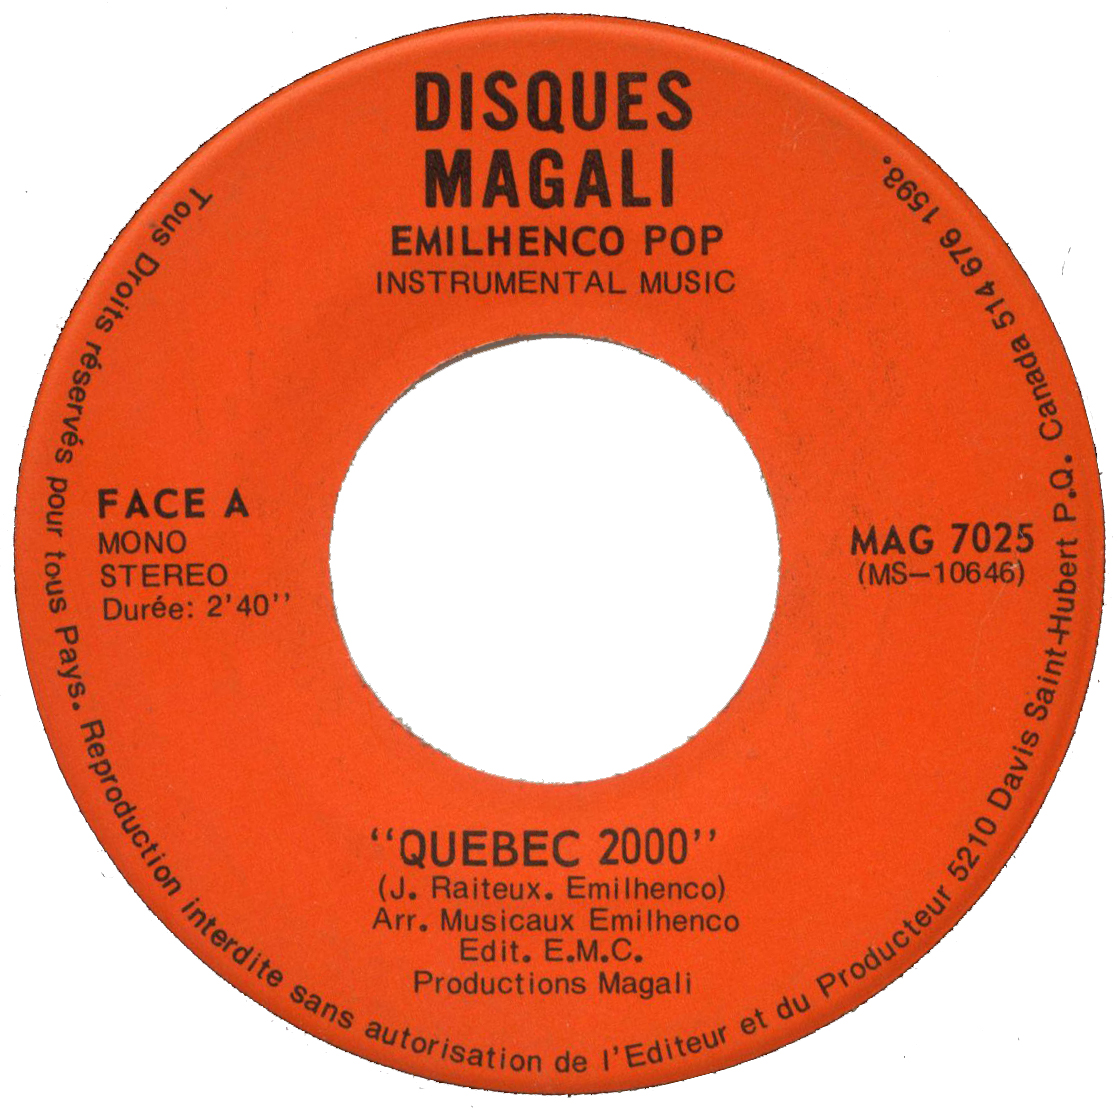 Emilhenco Pop – Du hard rock pour les Jeux Olympiques de 1976 à Montréal.